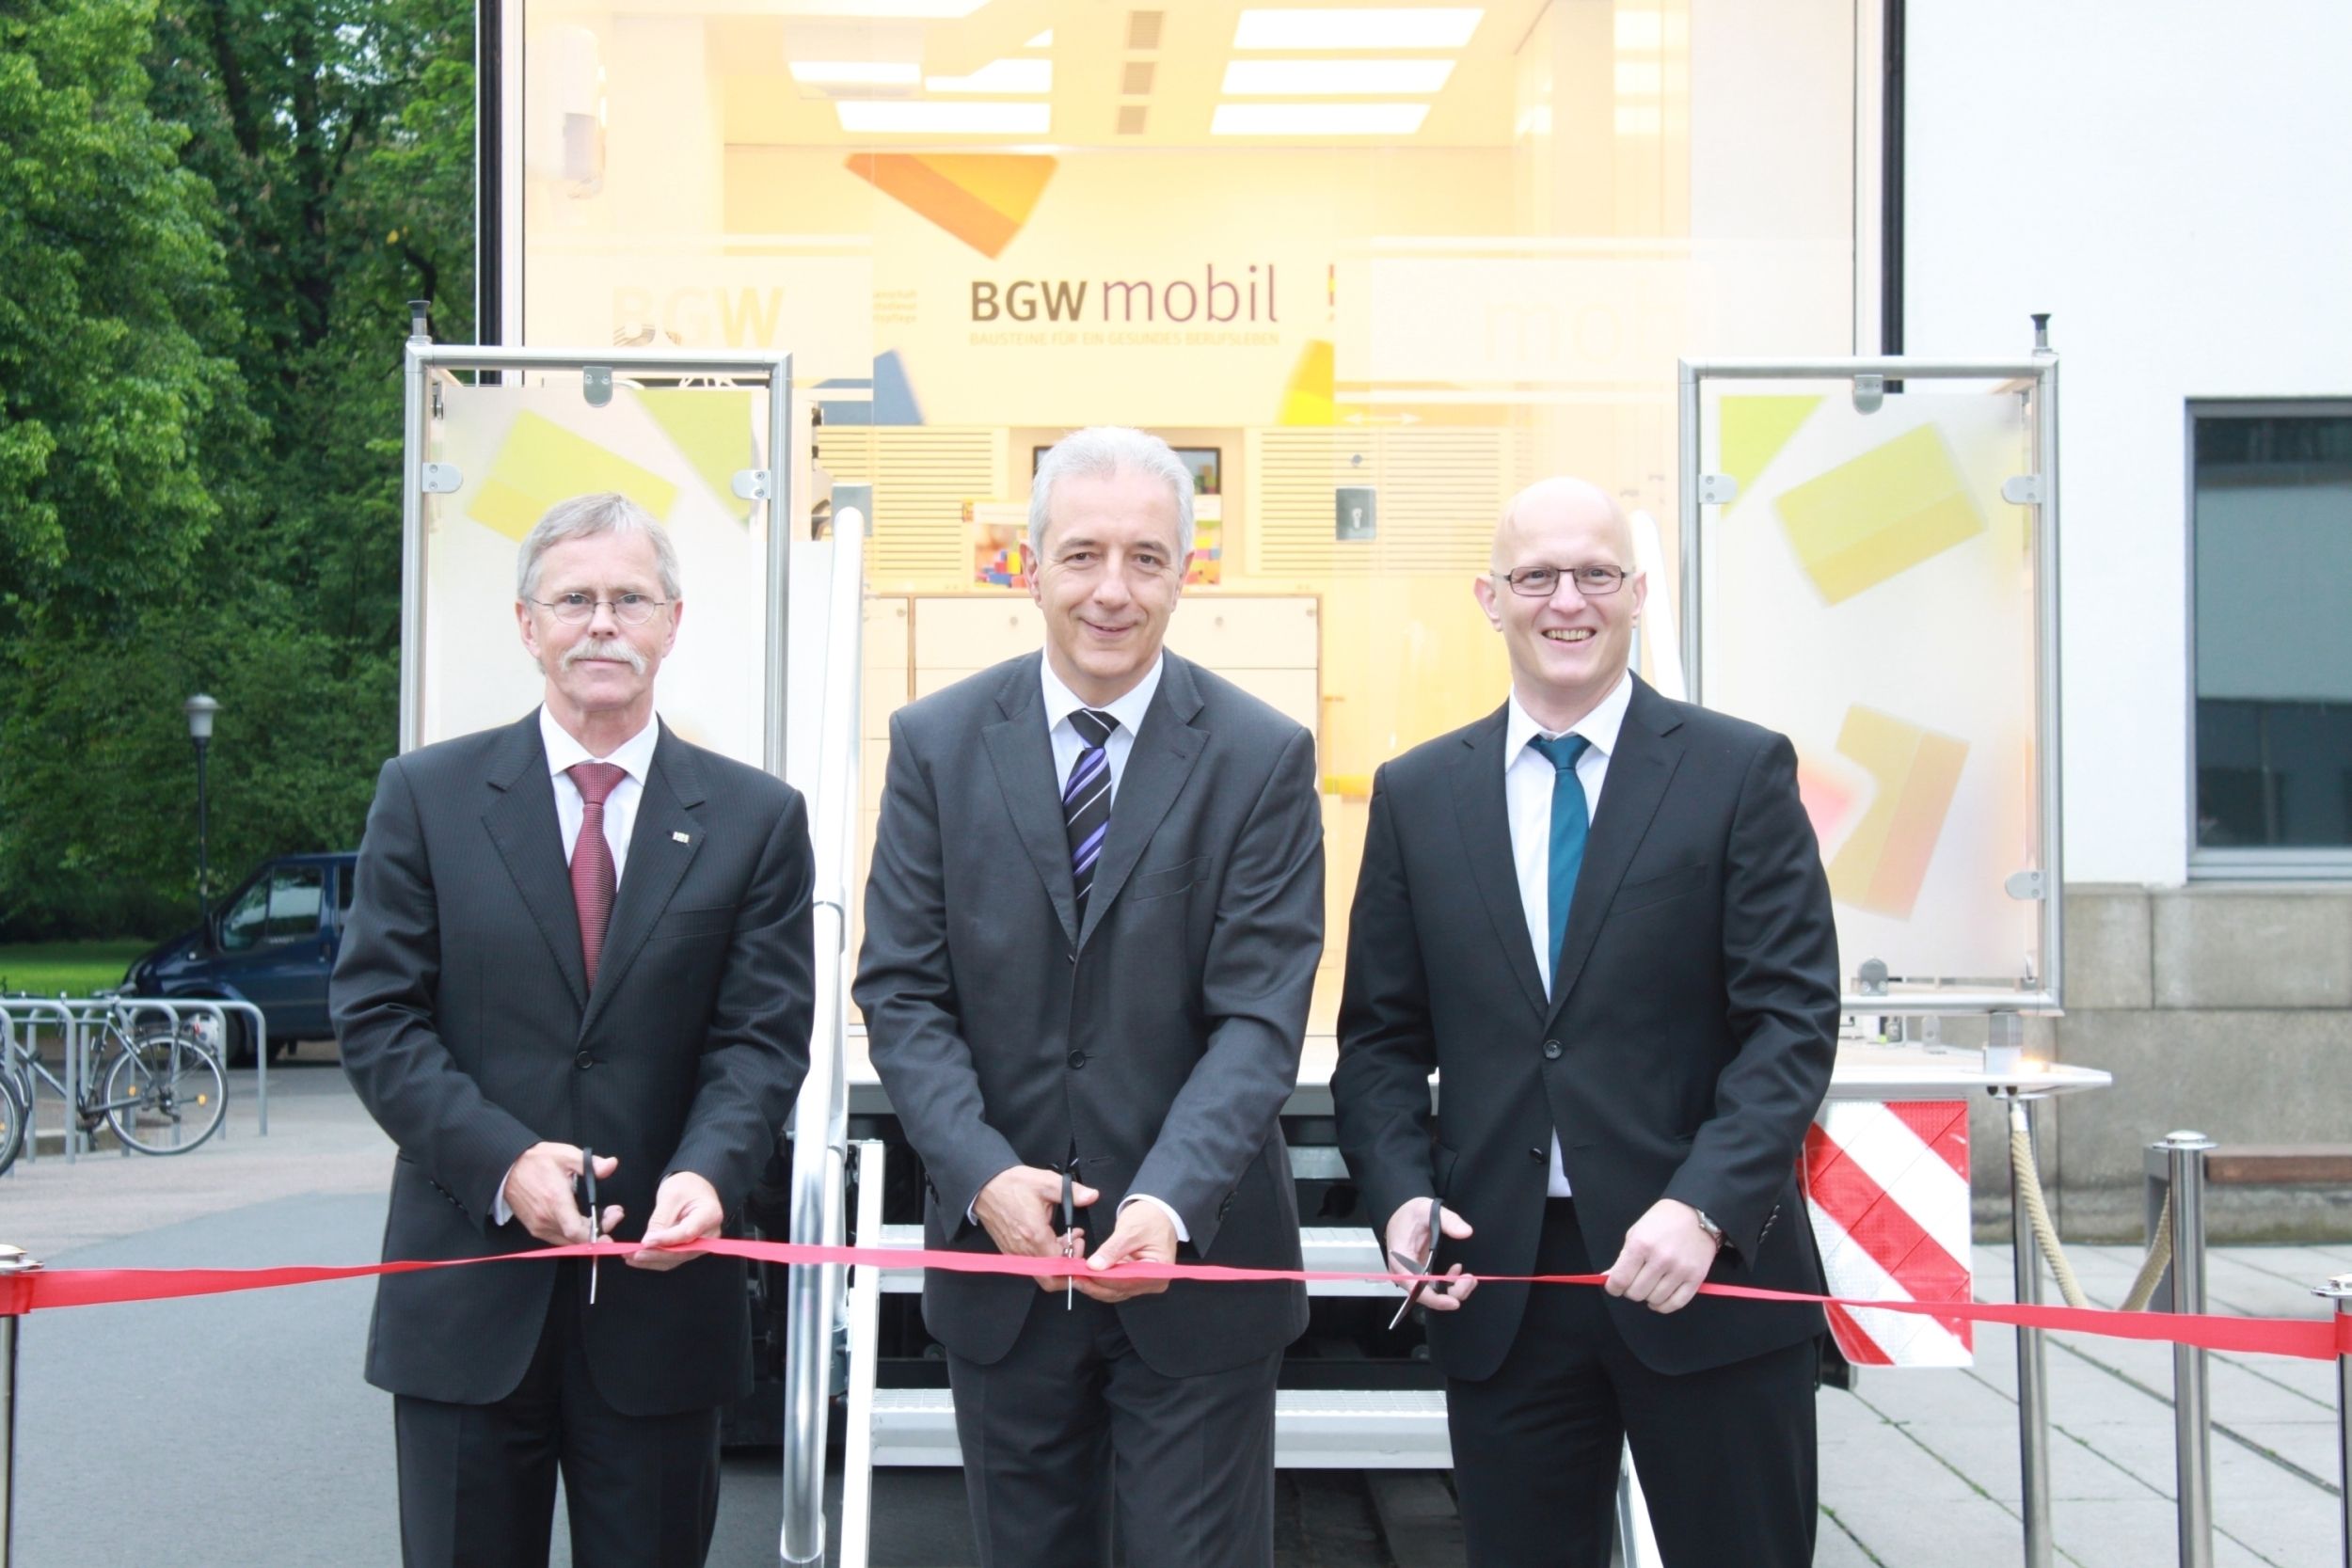 BGW mobil - Start 2014 in Dresden